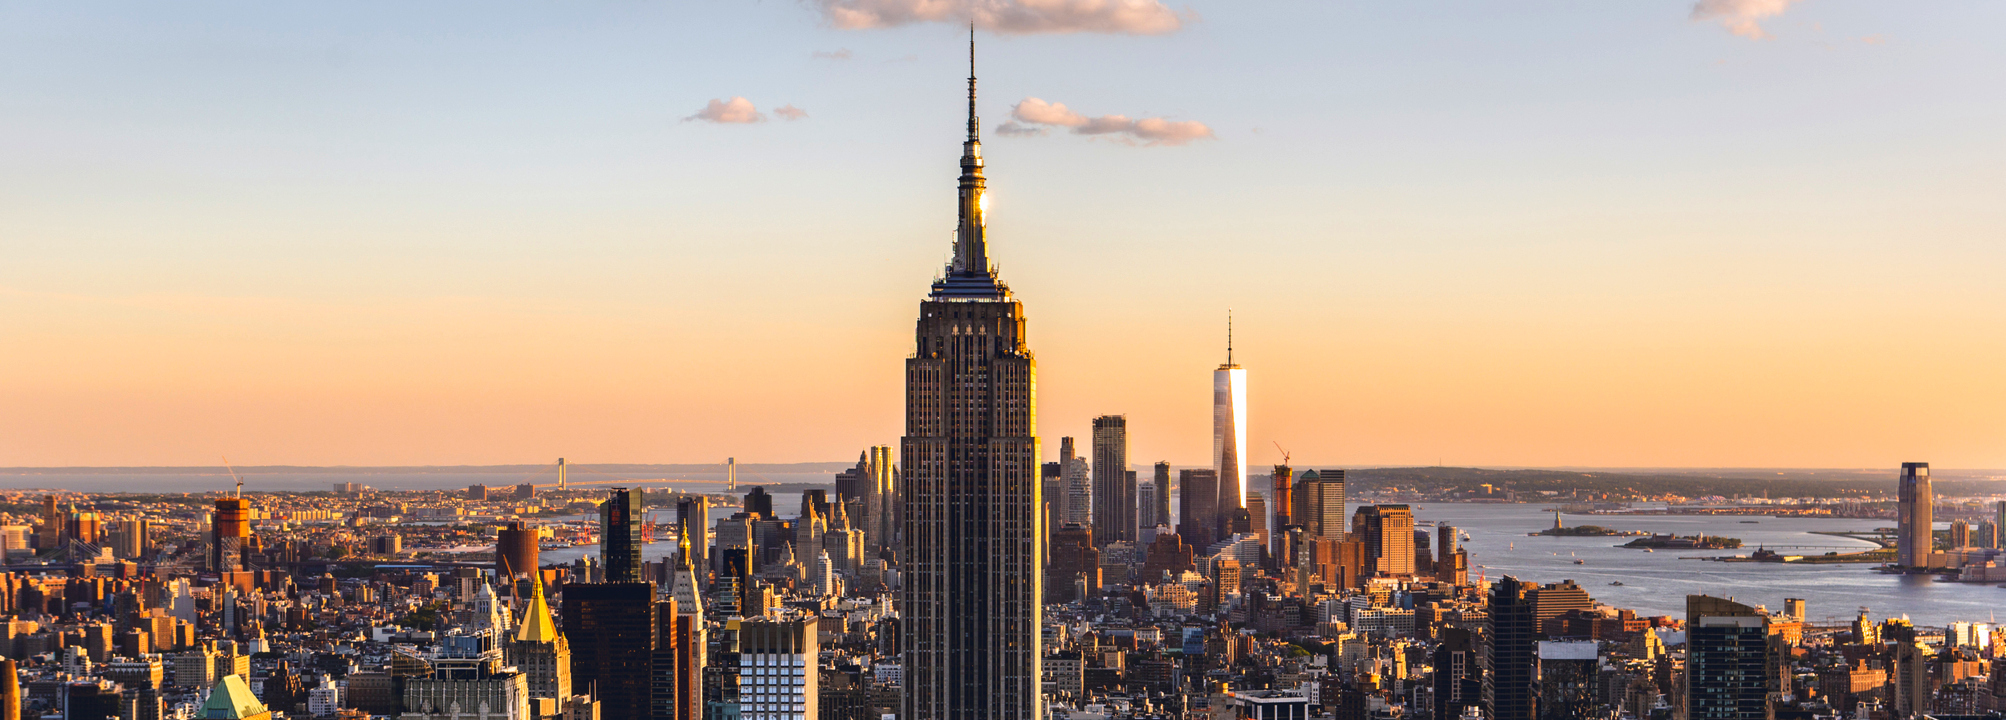 Empire State Building och Manhattan i New York.